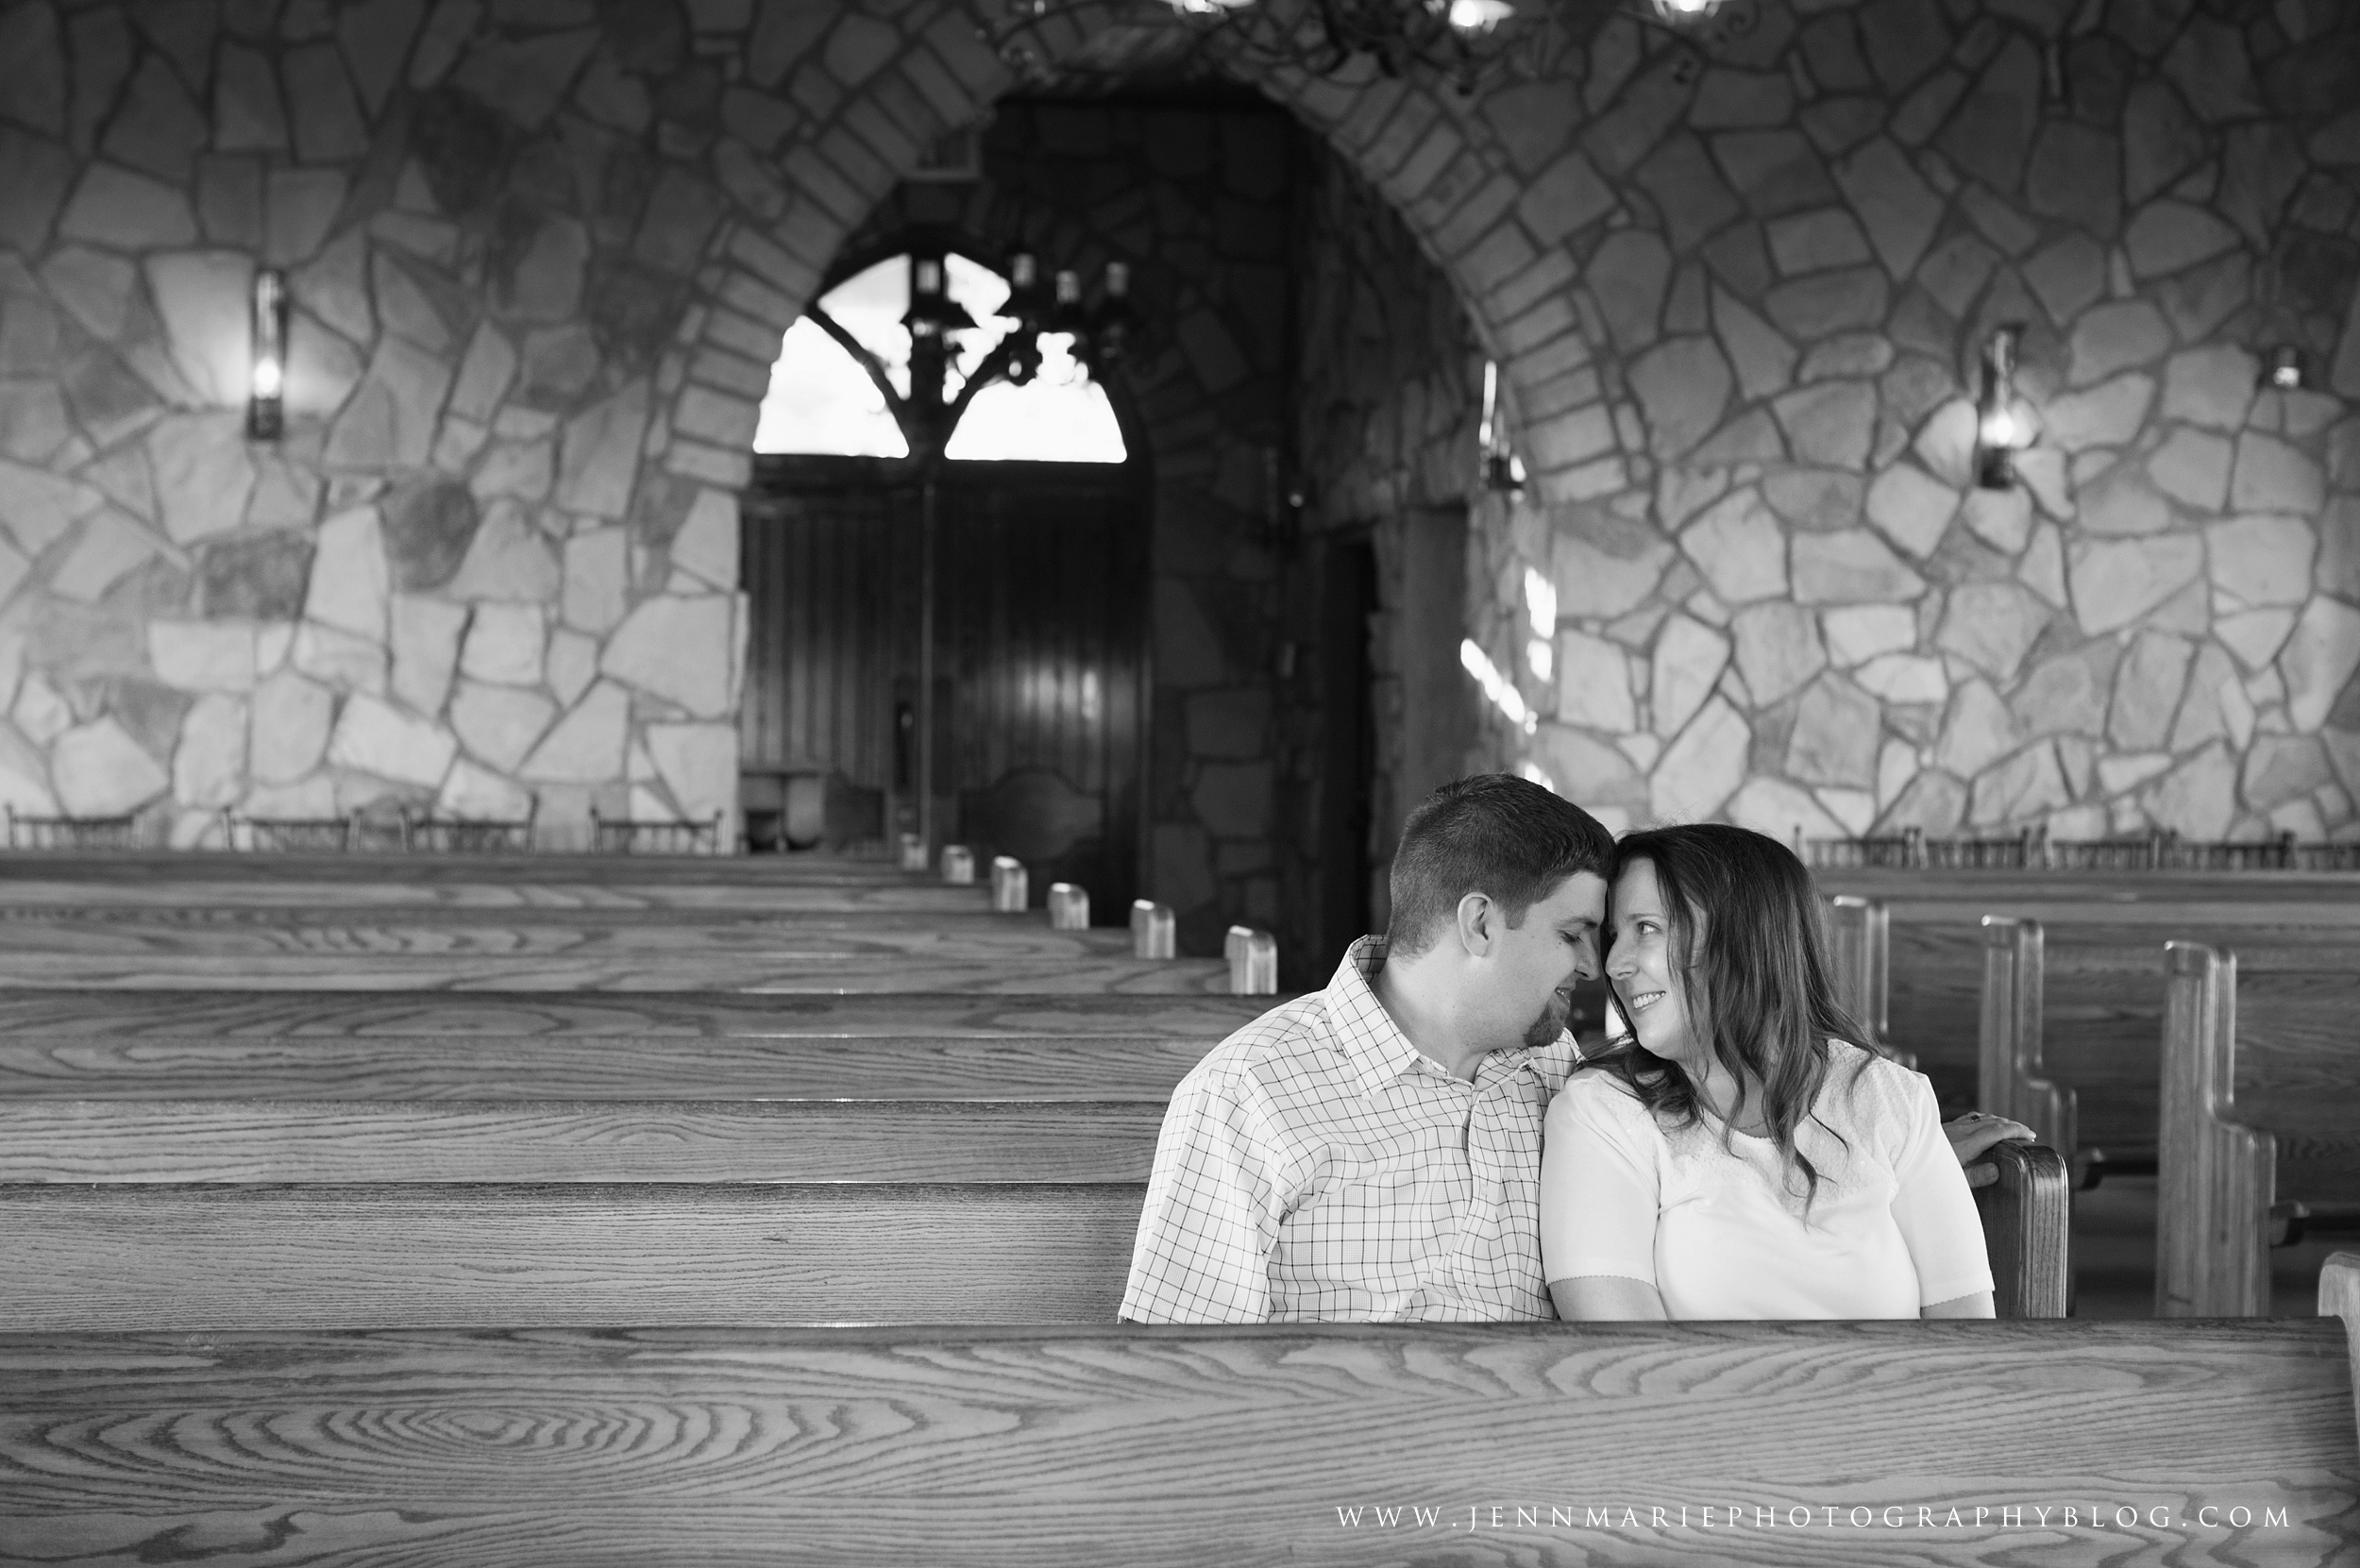 JennMarie Photography - South Carolina Portrait &amp; Wedding Photography - Engagements